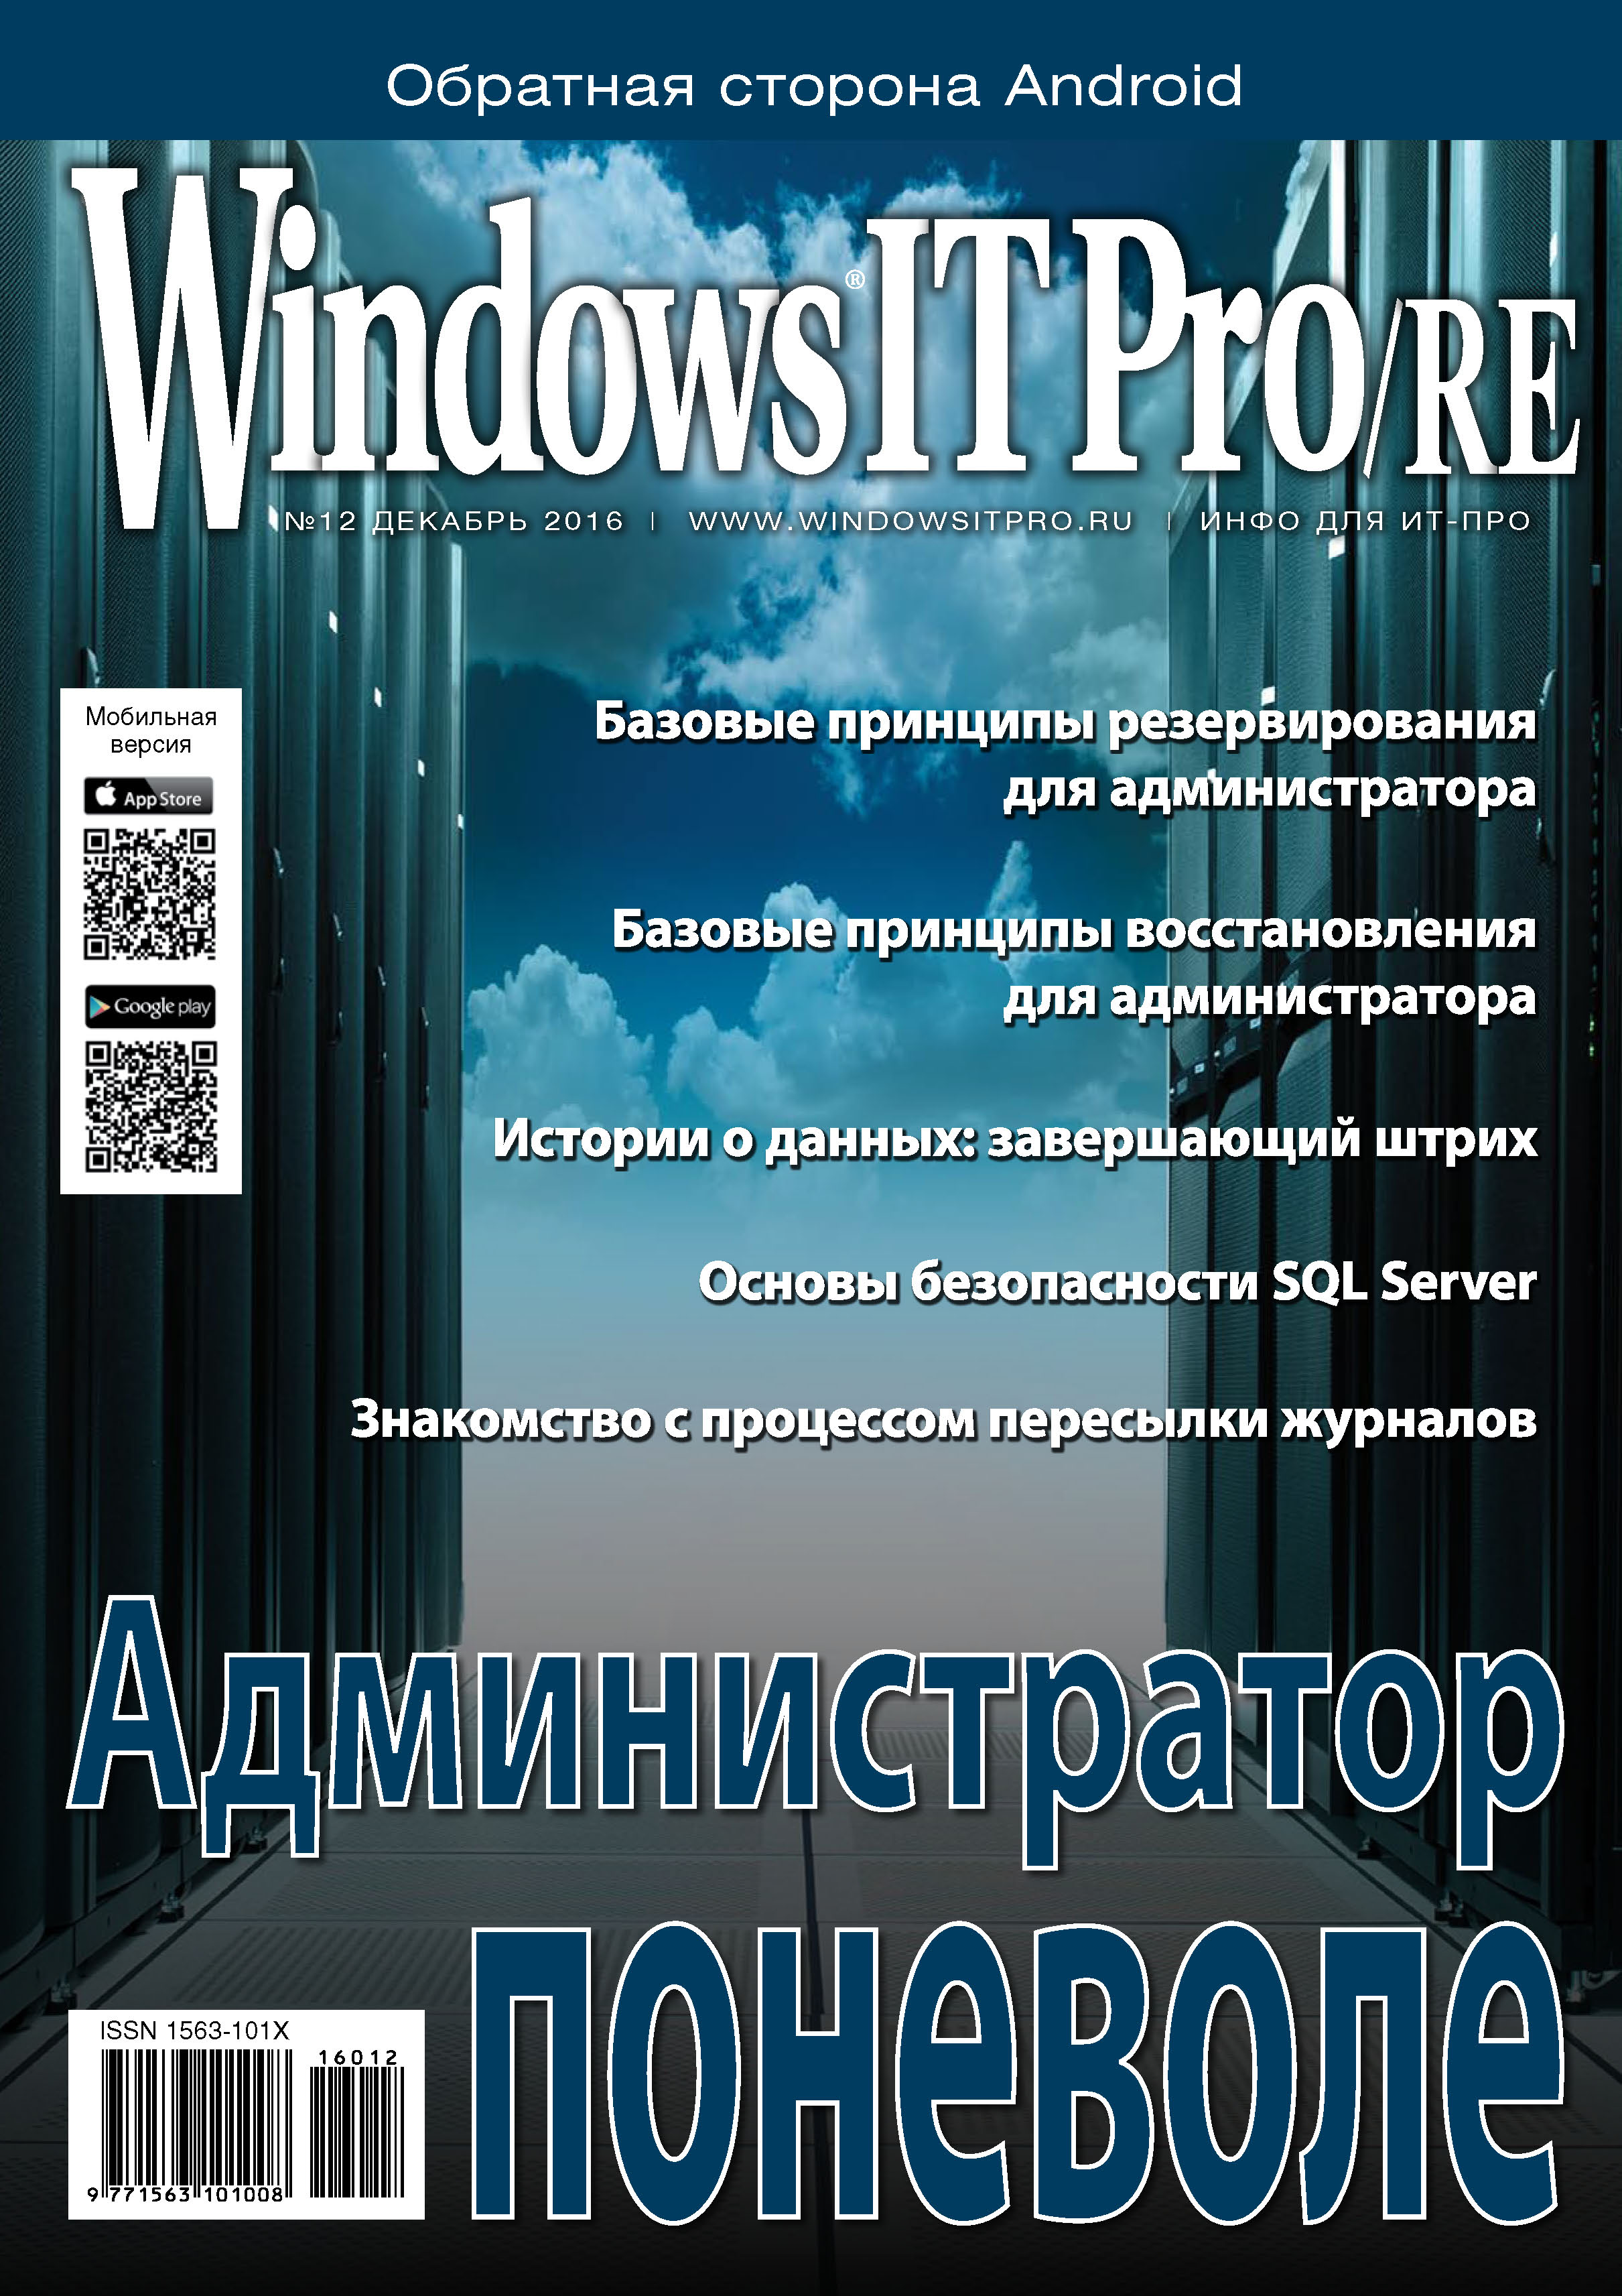 Windows IT Pro/RE№12/2016